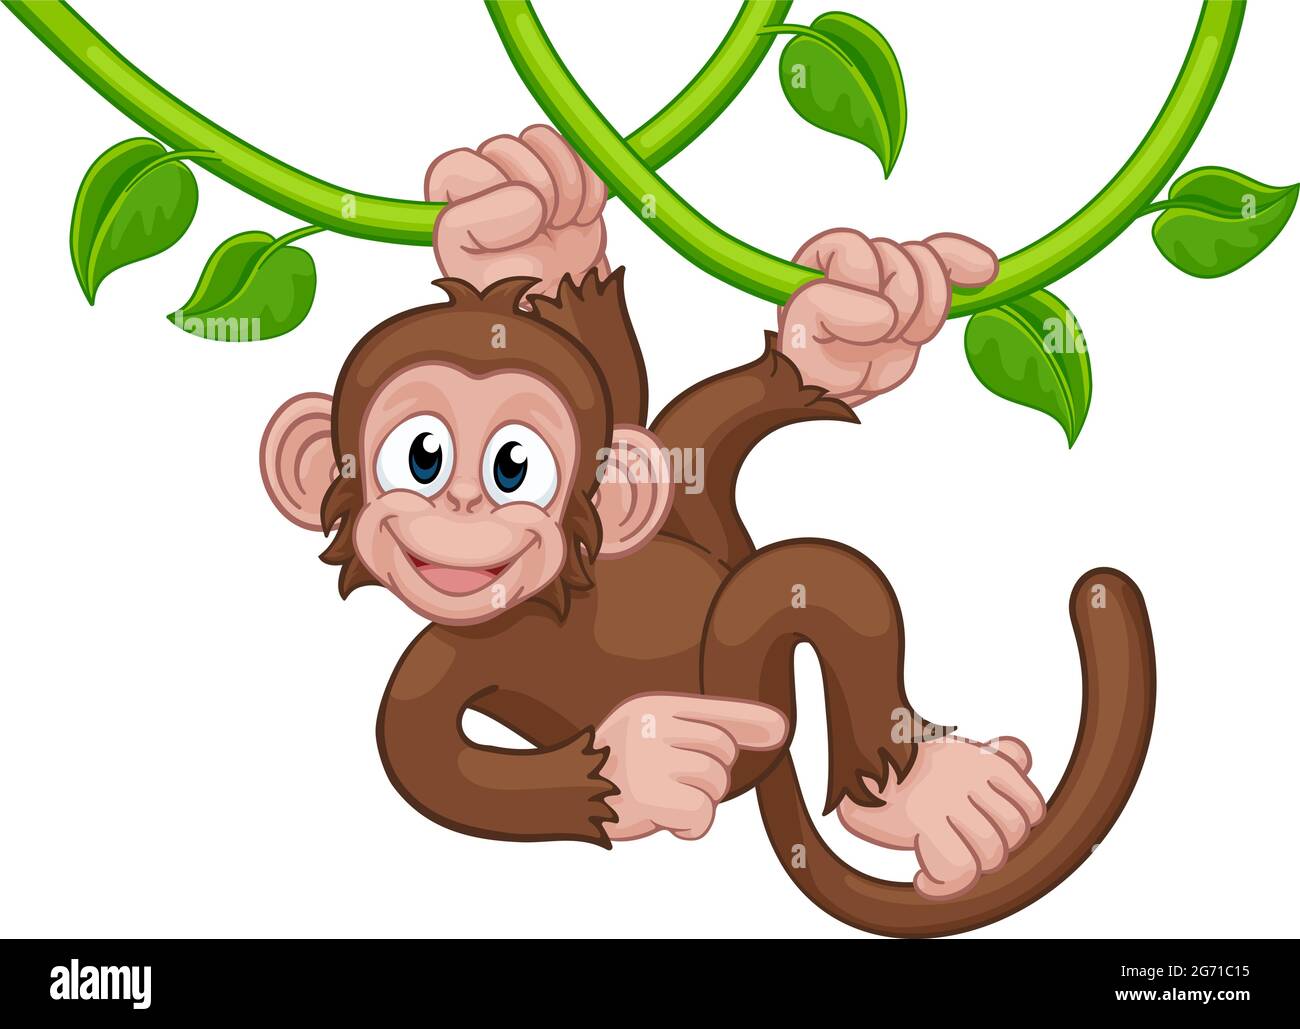 Обезьянка поет. Клипарт орангутанг на дереве рисунок. Обезьяна Синг Синг. Обезьян с травой рисунок. A chimp can sing